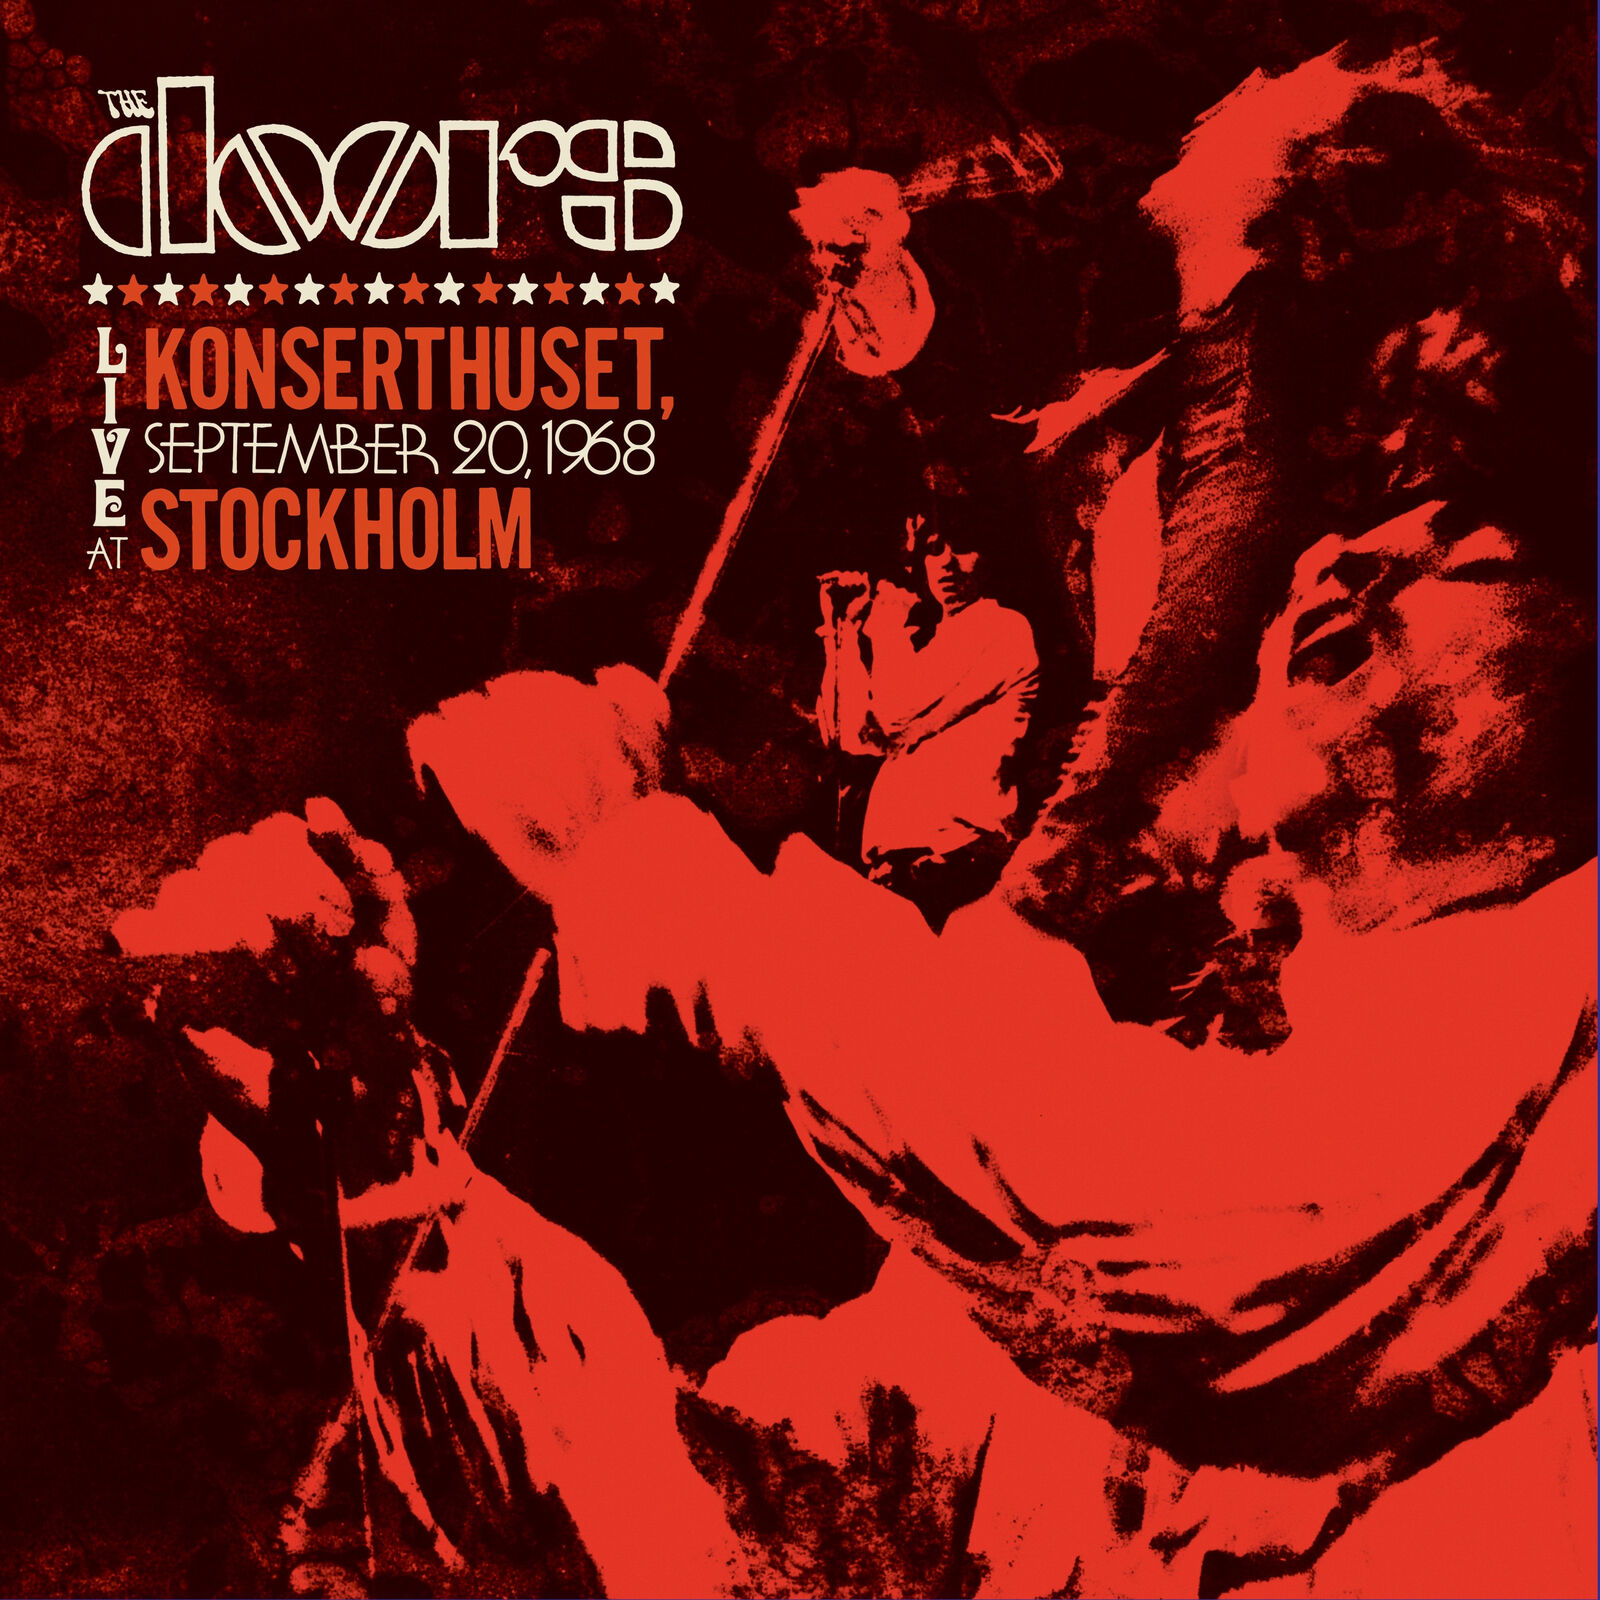 The Doors Live at Konserthuset, Stockholm, September 20, 1968 ( (CD) (UK IMPORT)